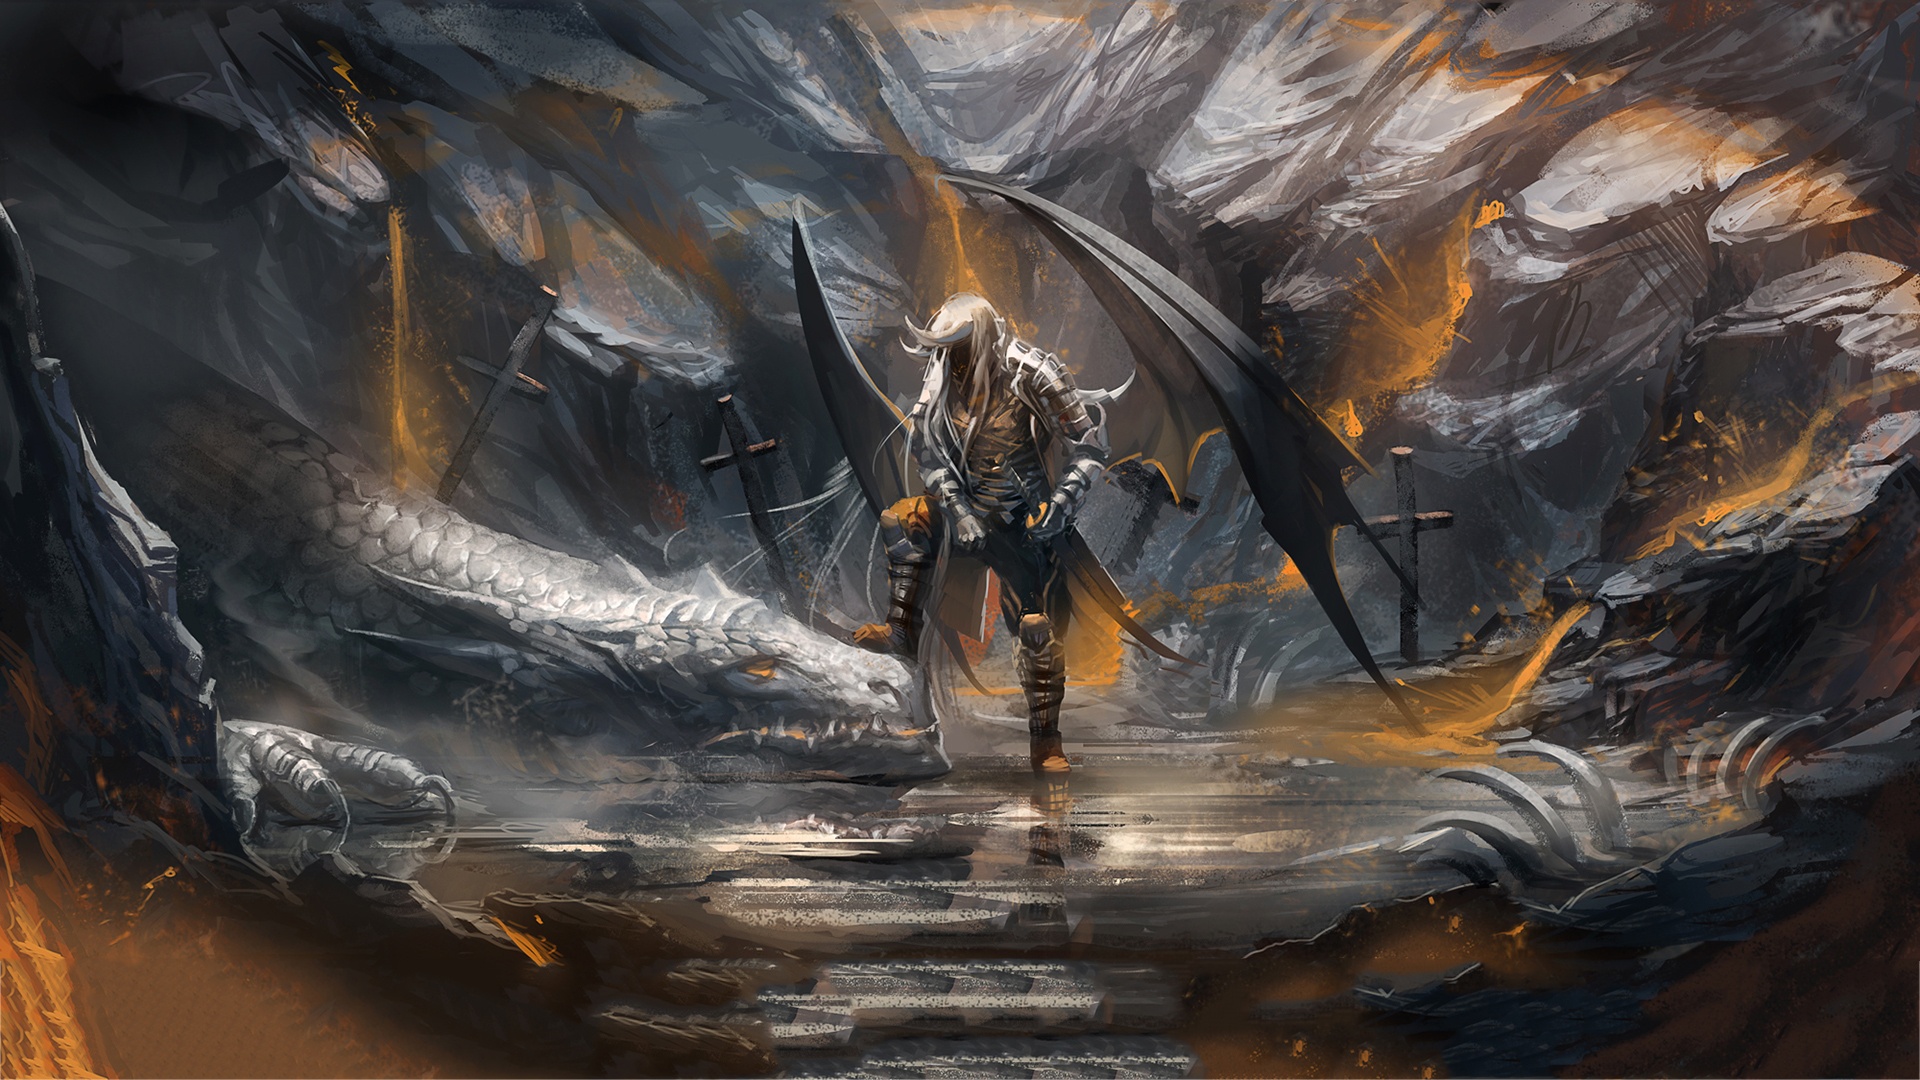 warriors, Dragons, Weapons, Sword Wallpaper